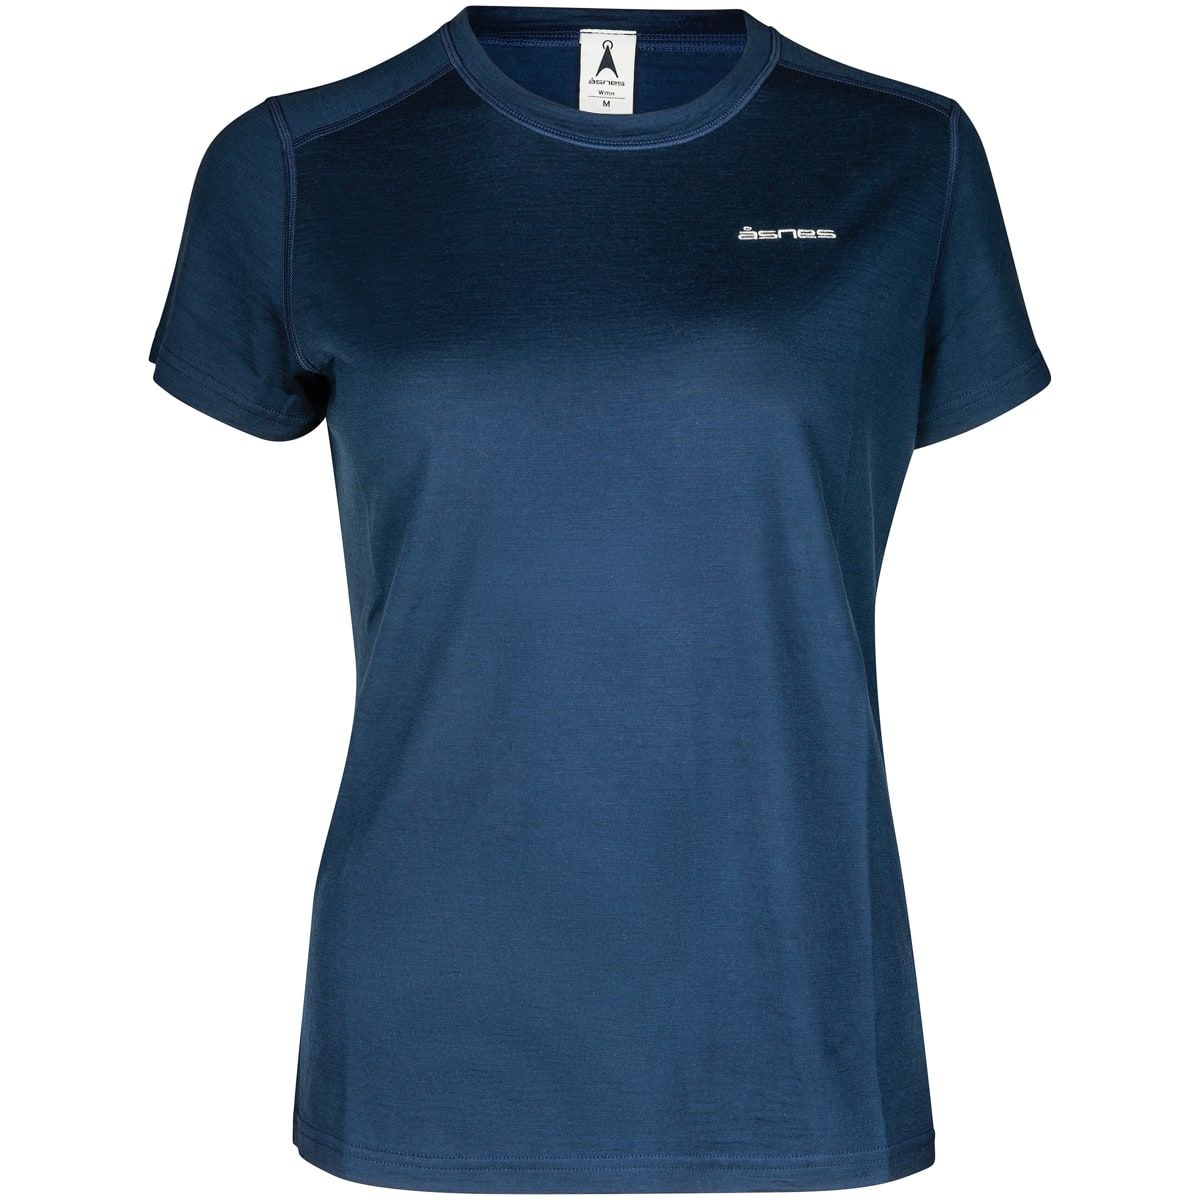 Åsnes Breitinden Wool T-Shirt Wmn Navy Blue